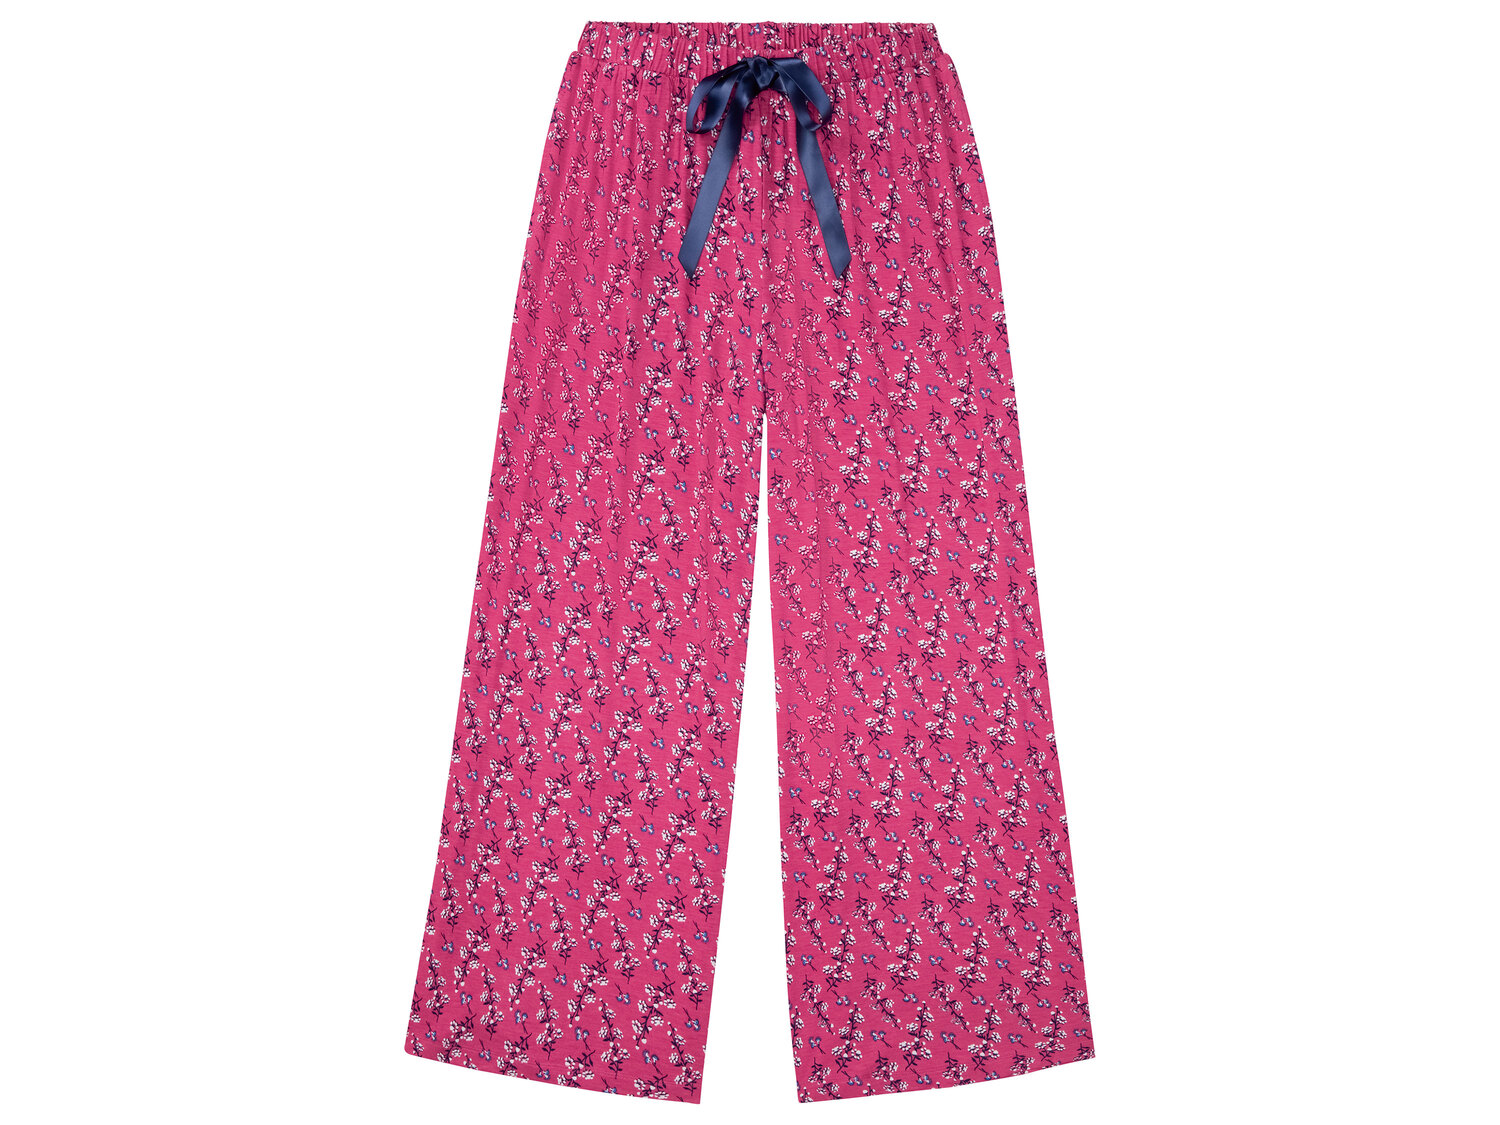 Pyjama femme , le prix 9.99 € 
- Du S au XL selon modèle
- Ex. 95 % viscose ...